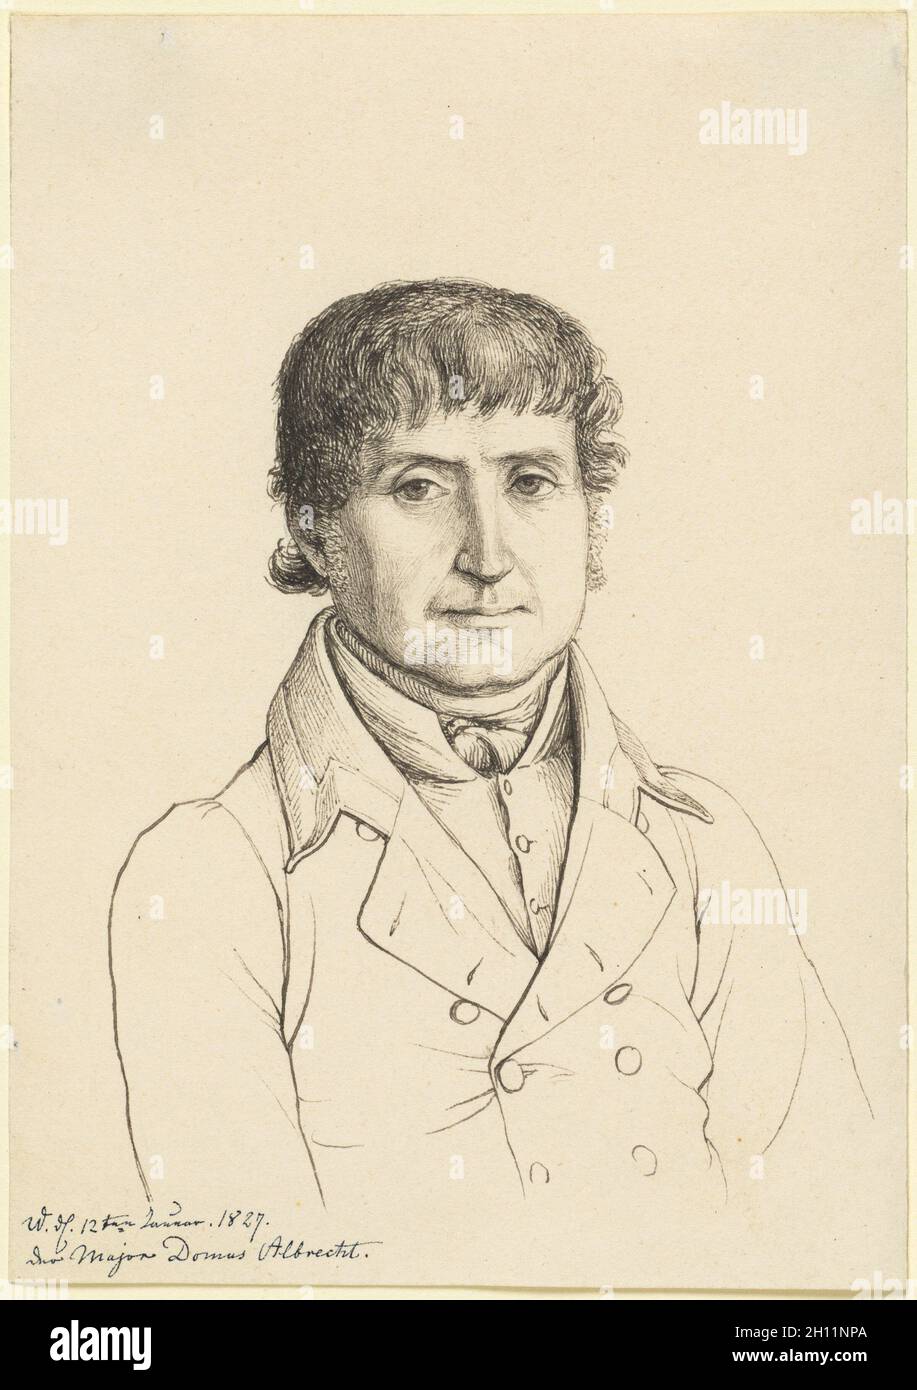 Majordomo Albrecht, 1827. Gerhard Wilhelm von Reutern (German, 1794-1865). Pen and gray and black ink; sheet: 18.1 x 12.8 cm (7 1/8 x 5 1/16 in.). Stock Photo